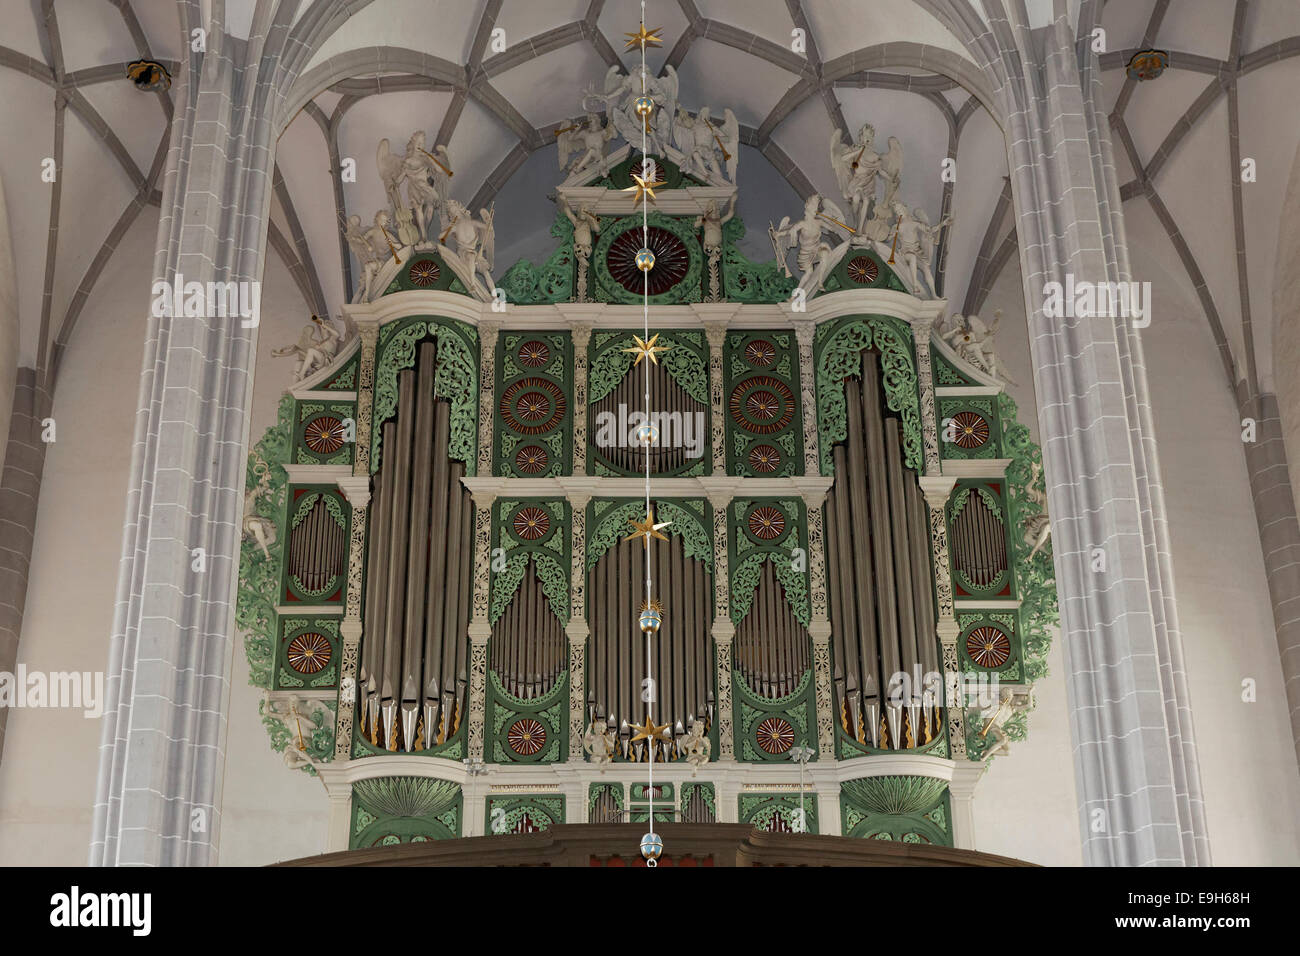 Sun-Orgel von Eugenio Casparini, Pfarrkirche St. Peter und Paul, Görlitz, Sachsen, Deutschland Stockfoto